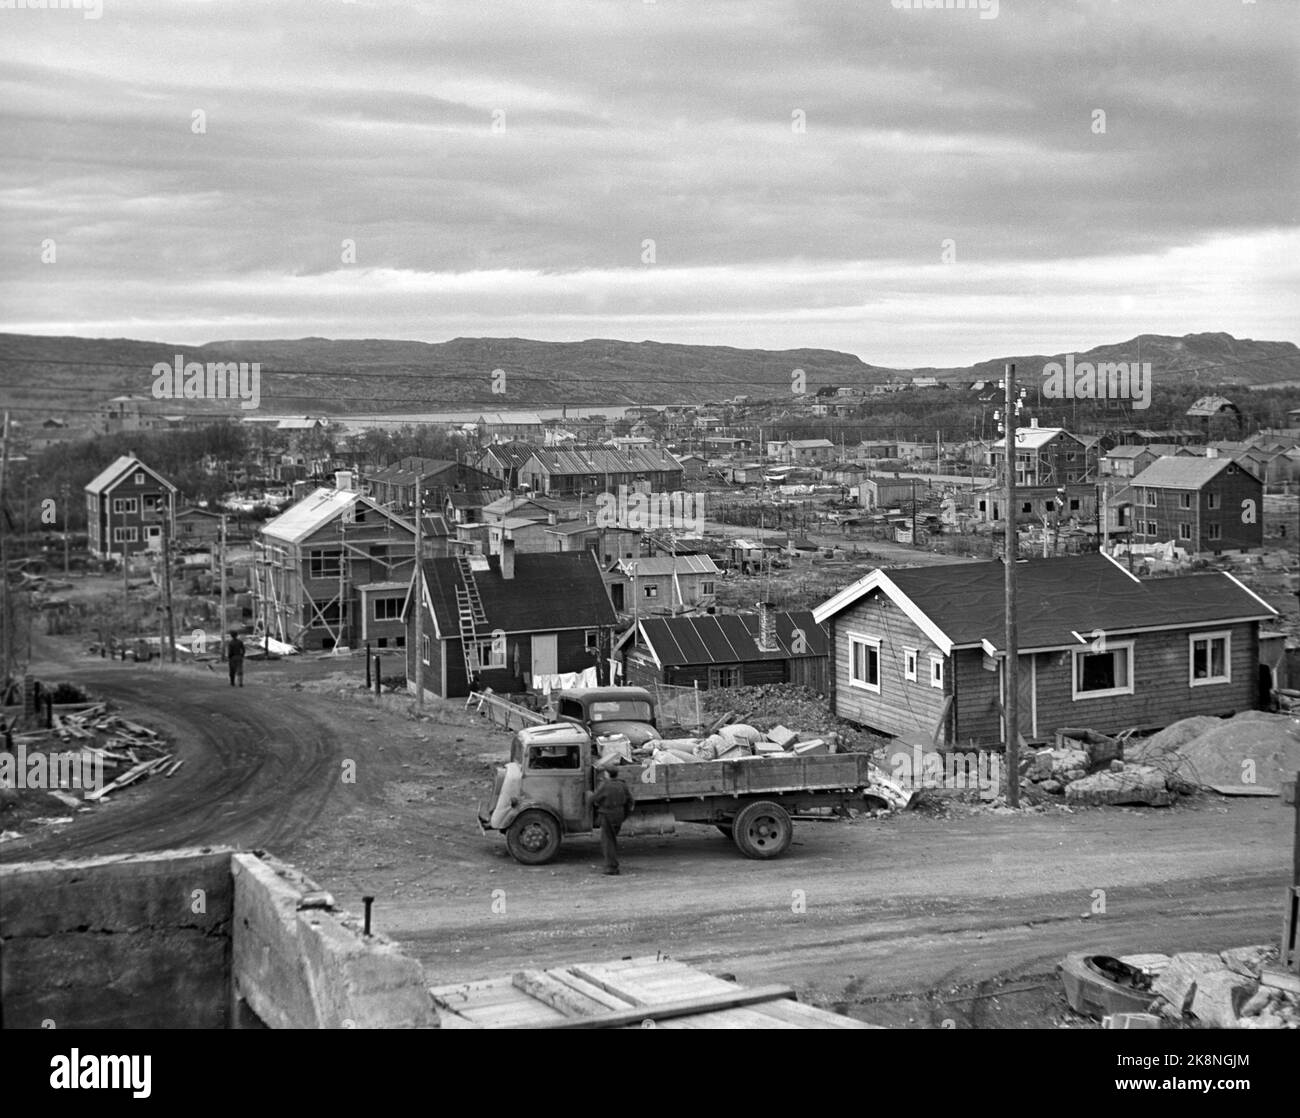 La Chiesa del 1946 settembre la ripresa nella Norvegia settentrionale dopo la seconda guerra mondiale Struttura dell'alloggiamento. Immagine panoramica di Kirkenes che mostra molte case in costruzione e un camion con materiali da costruzione in primo piano. Foto: NTB / NTB Foto Stock